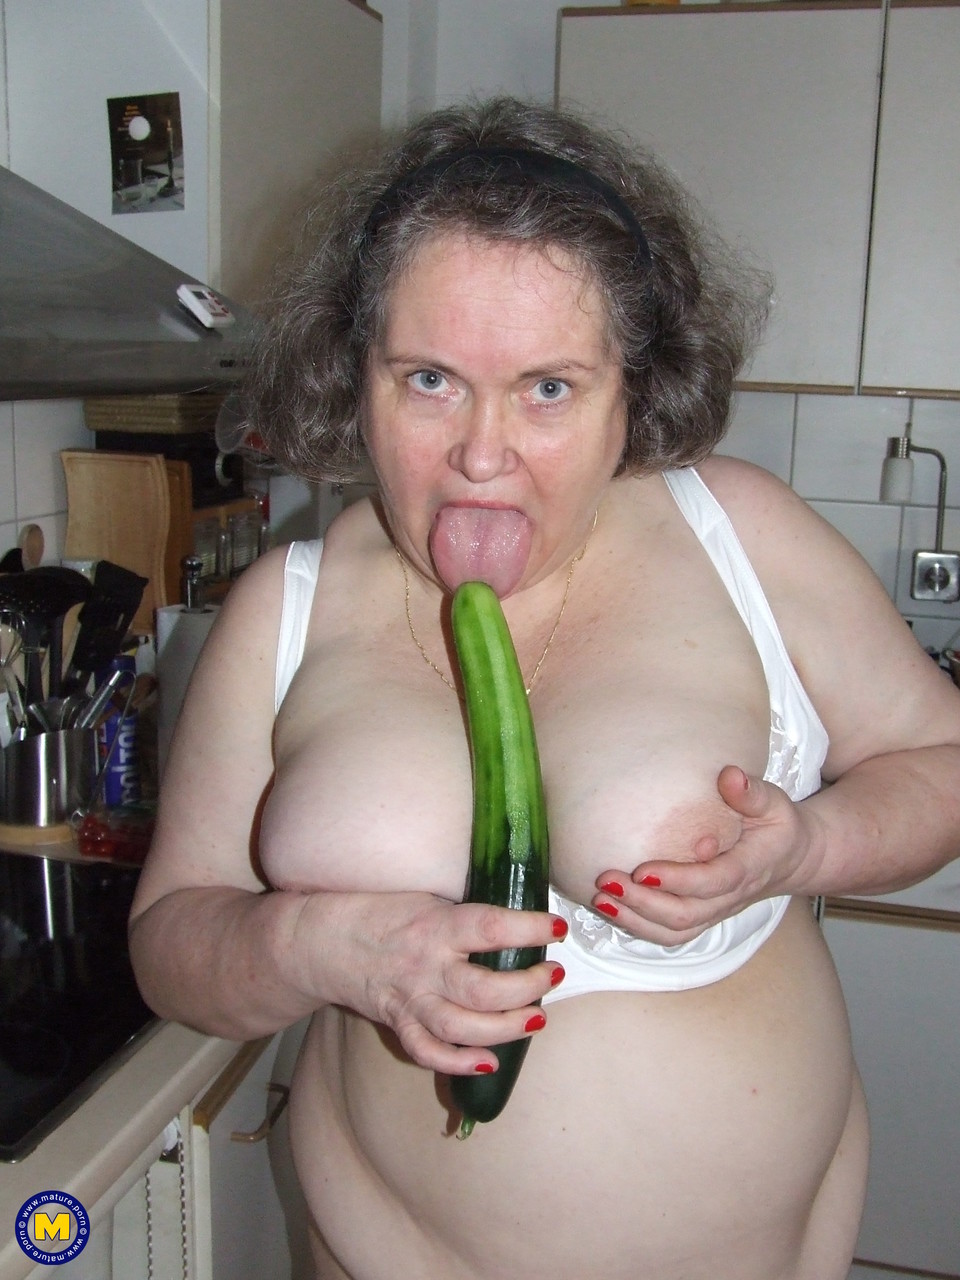 Fat mature housewife Birgid masturbates with a cucumber in the kitchen porno foto #423883226 | Mature NL Pics, Birgid, Granny, mobiele porno